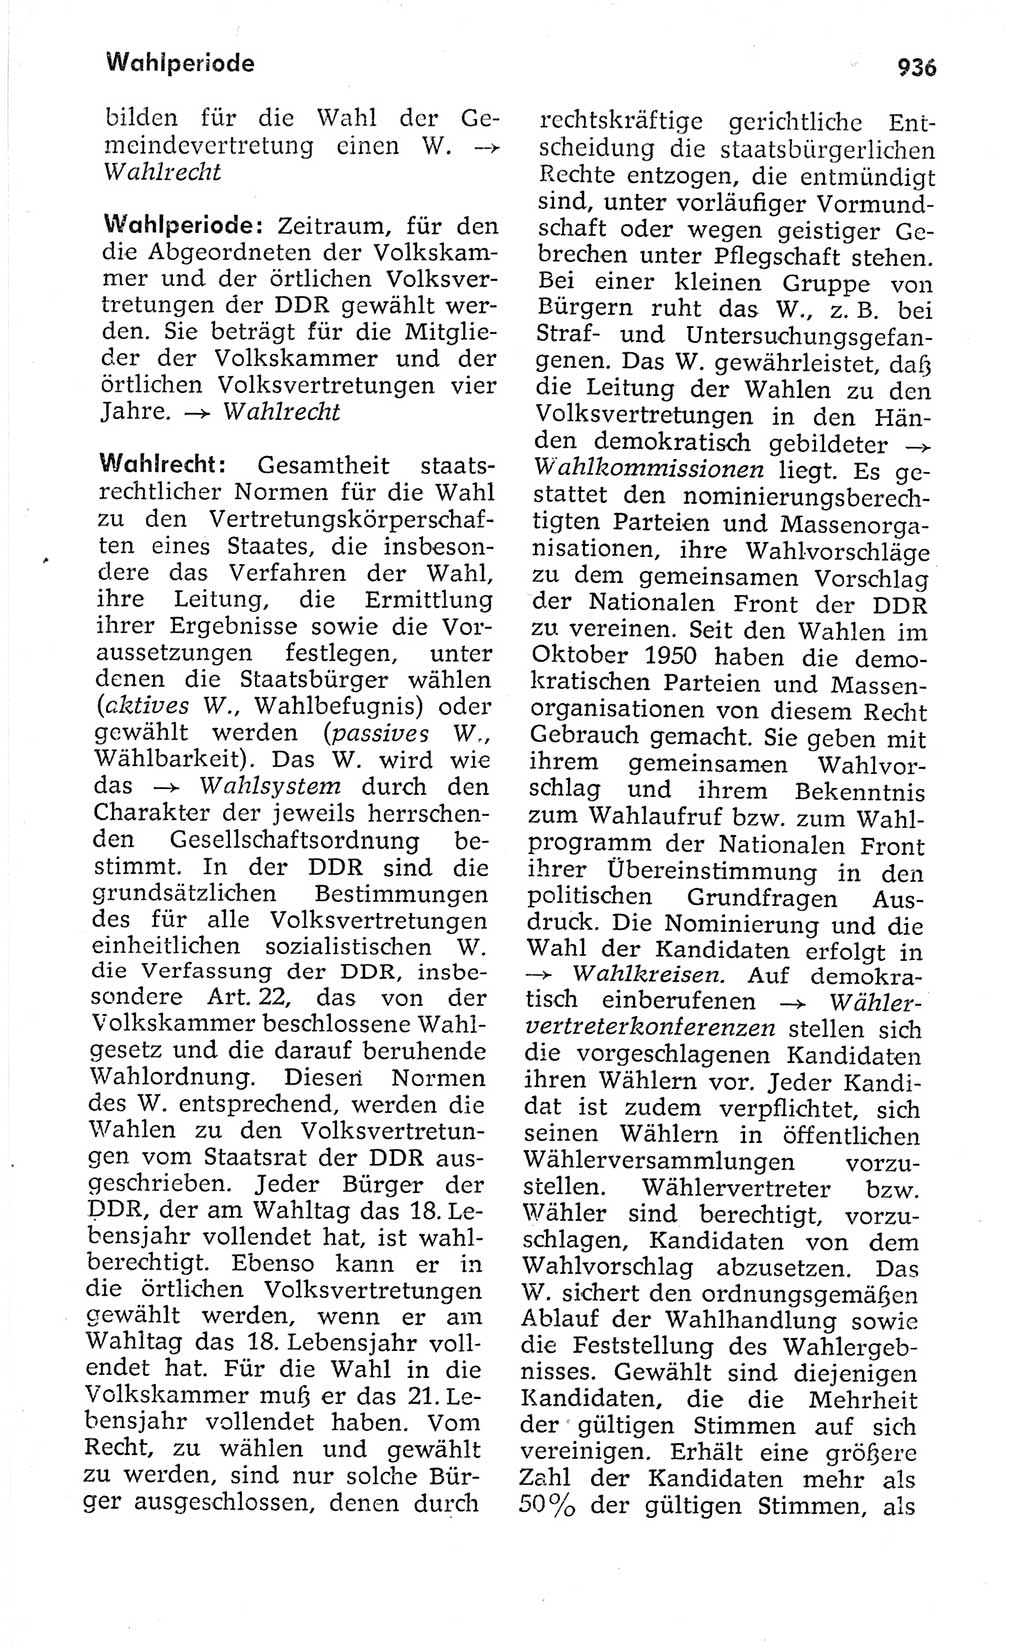 Kleines politisches Wörterbuch [Deutsche Demokratische Republik (DDR)] 1973, Seite 936 (Kl. pol. Wb. DDR 1973, S. 936)